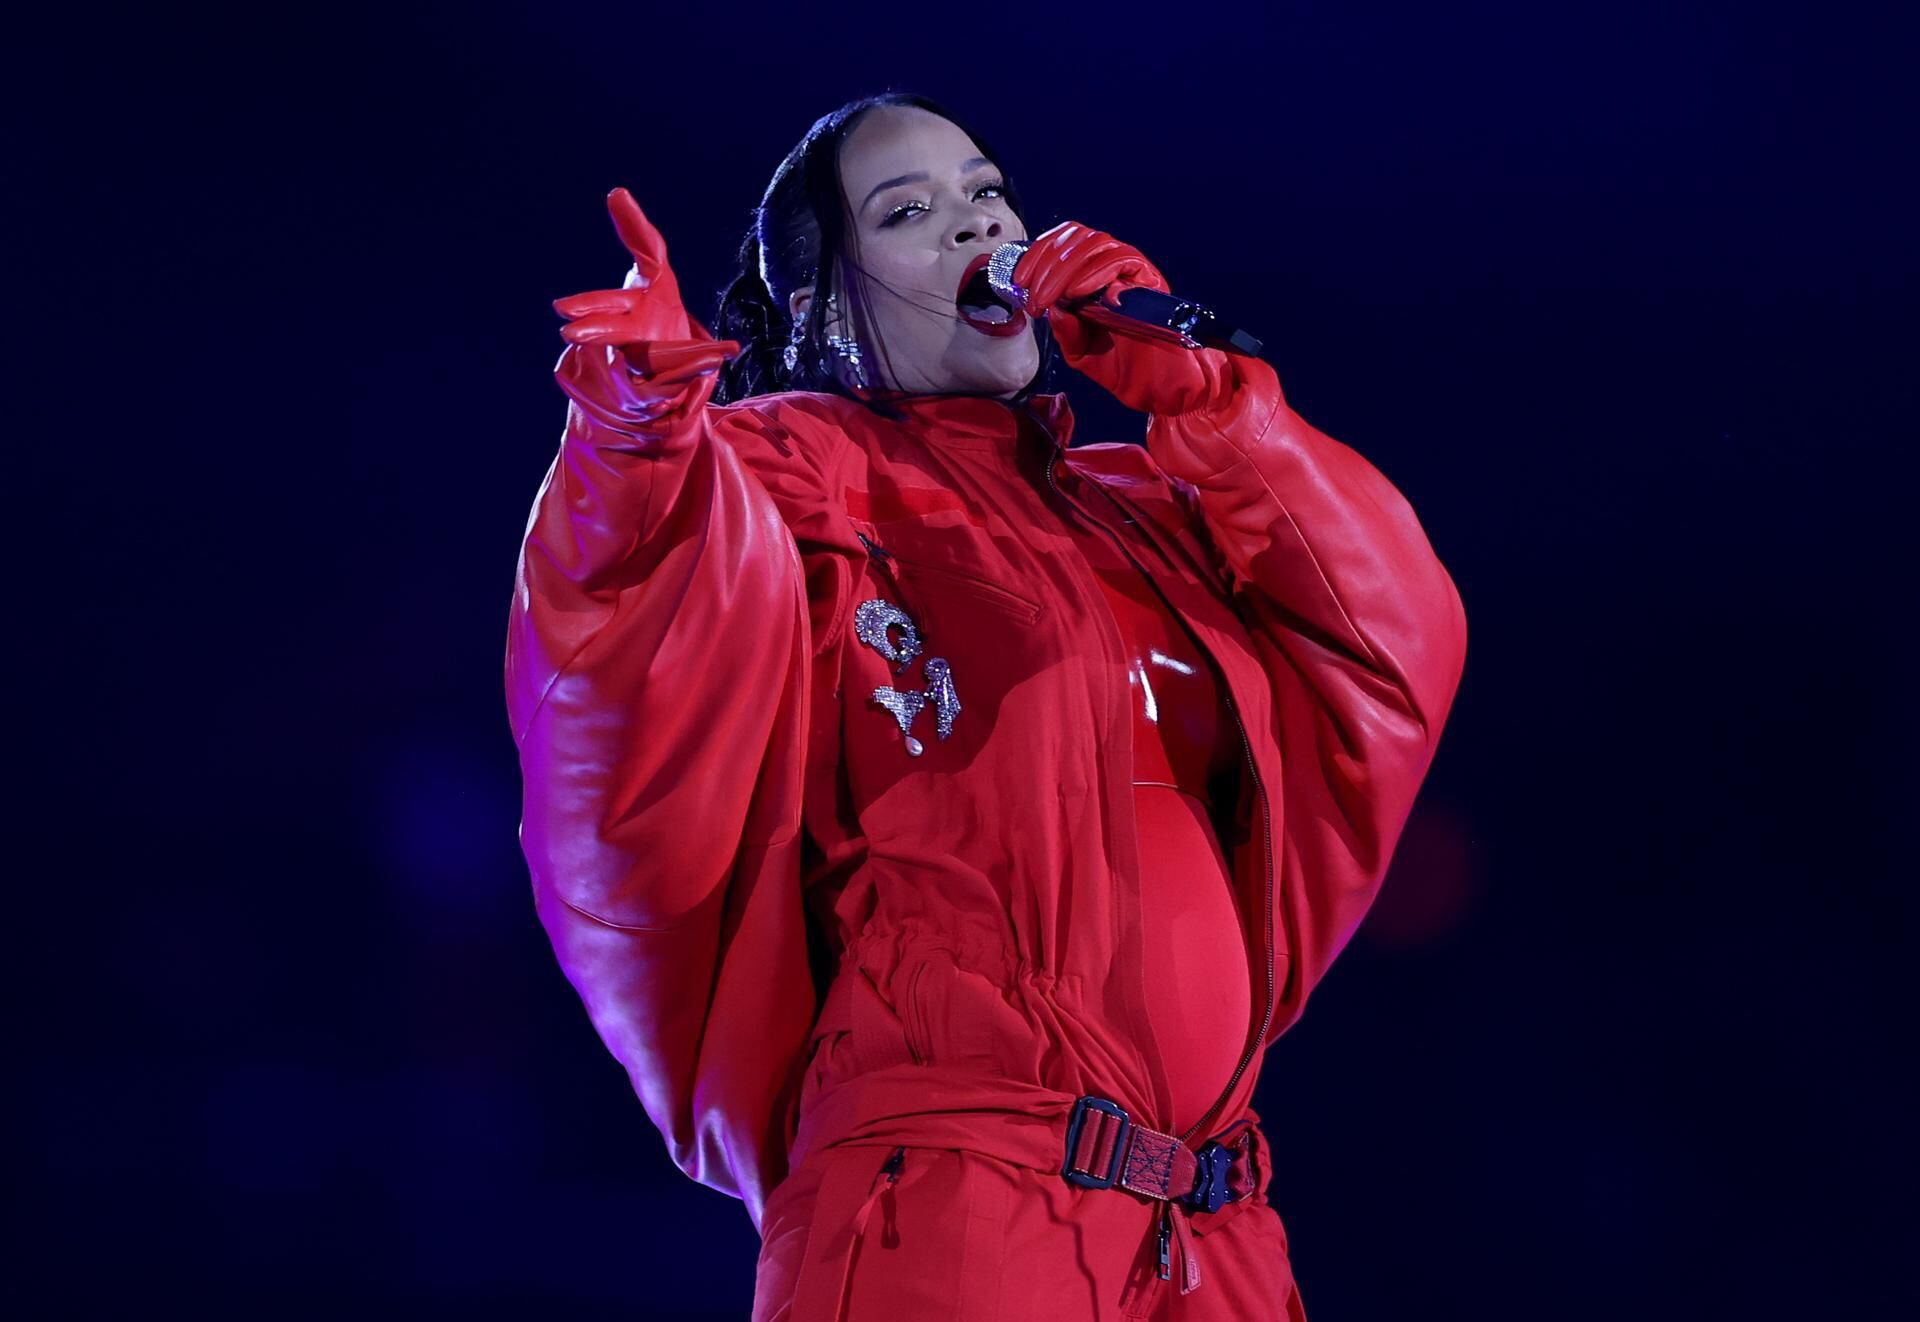 Rihanna sorprendió durante su show del Super Bowl al mostrar que estaba embarazada. (Foto: EFE/EPA/CAROLINE BREHMAN)